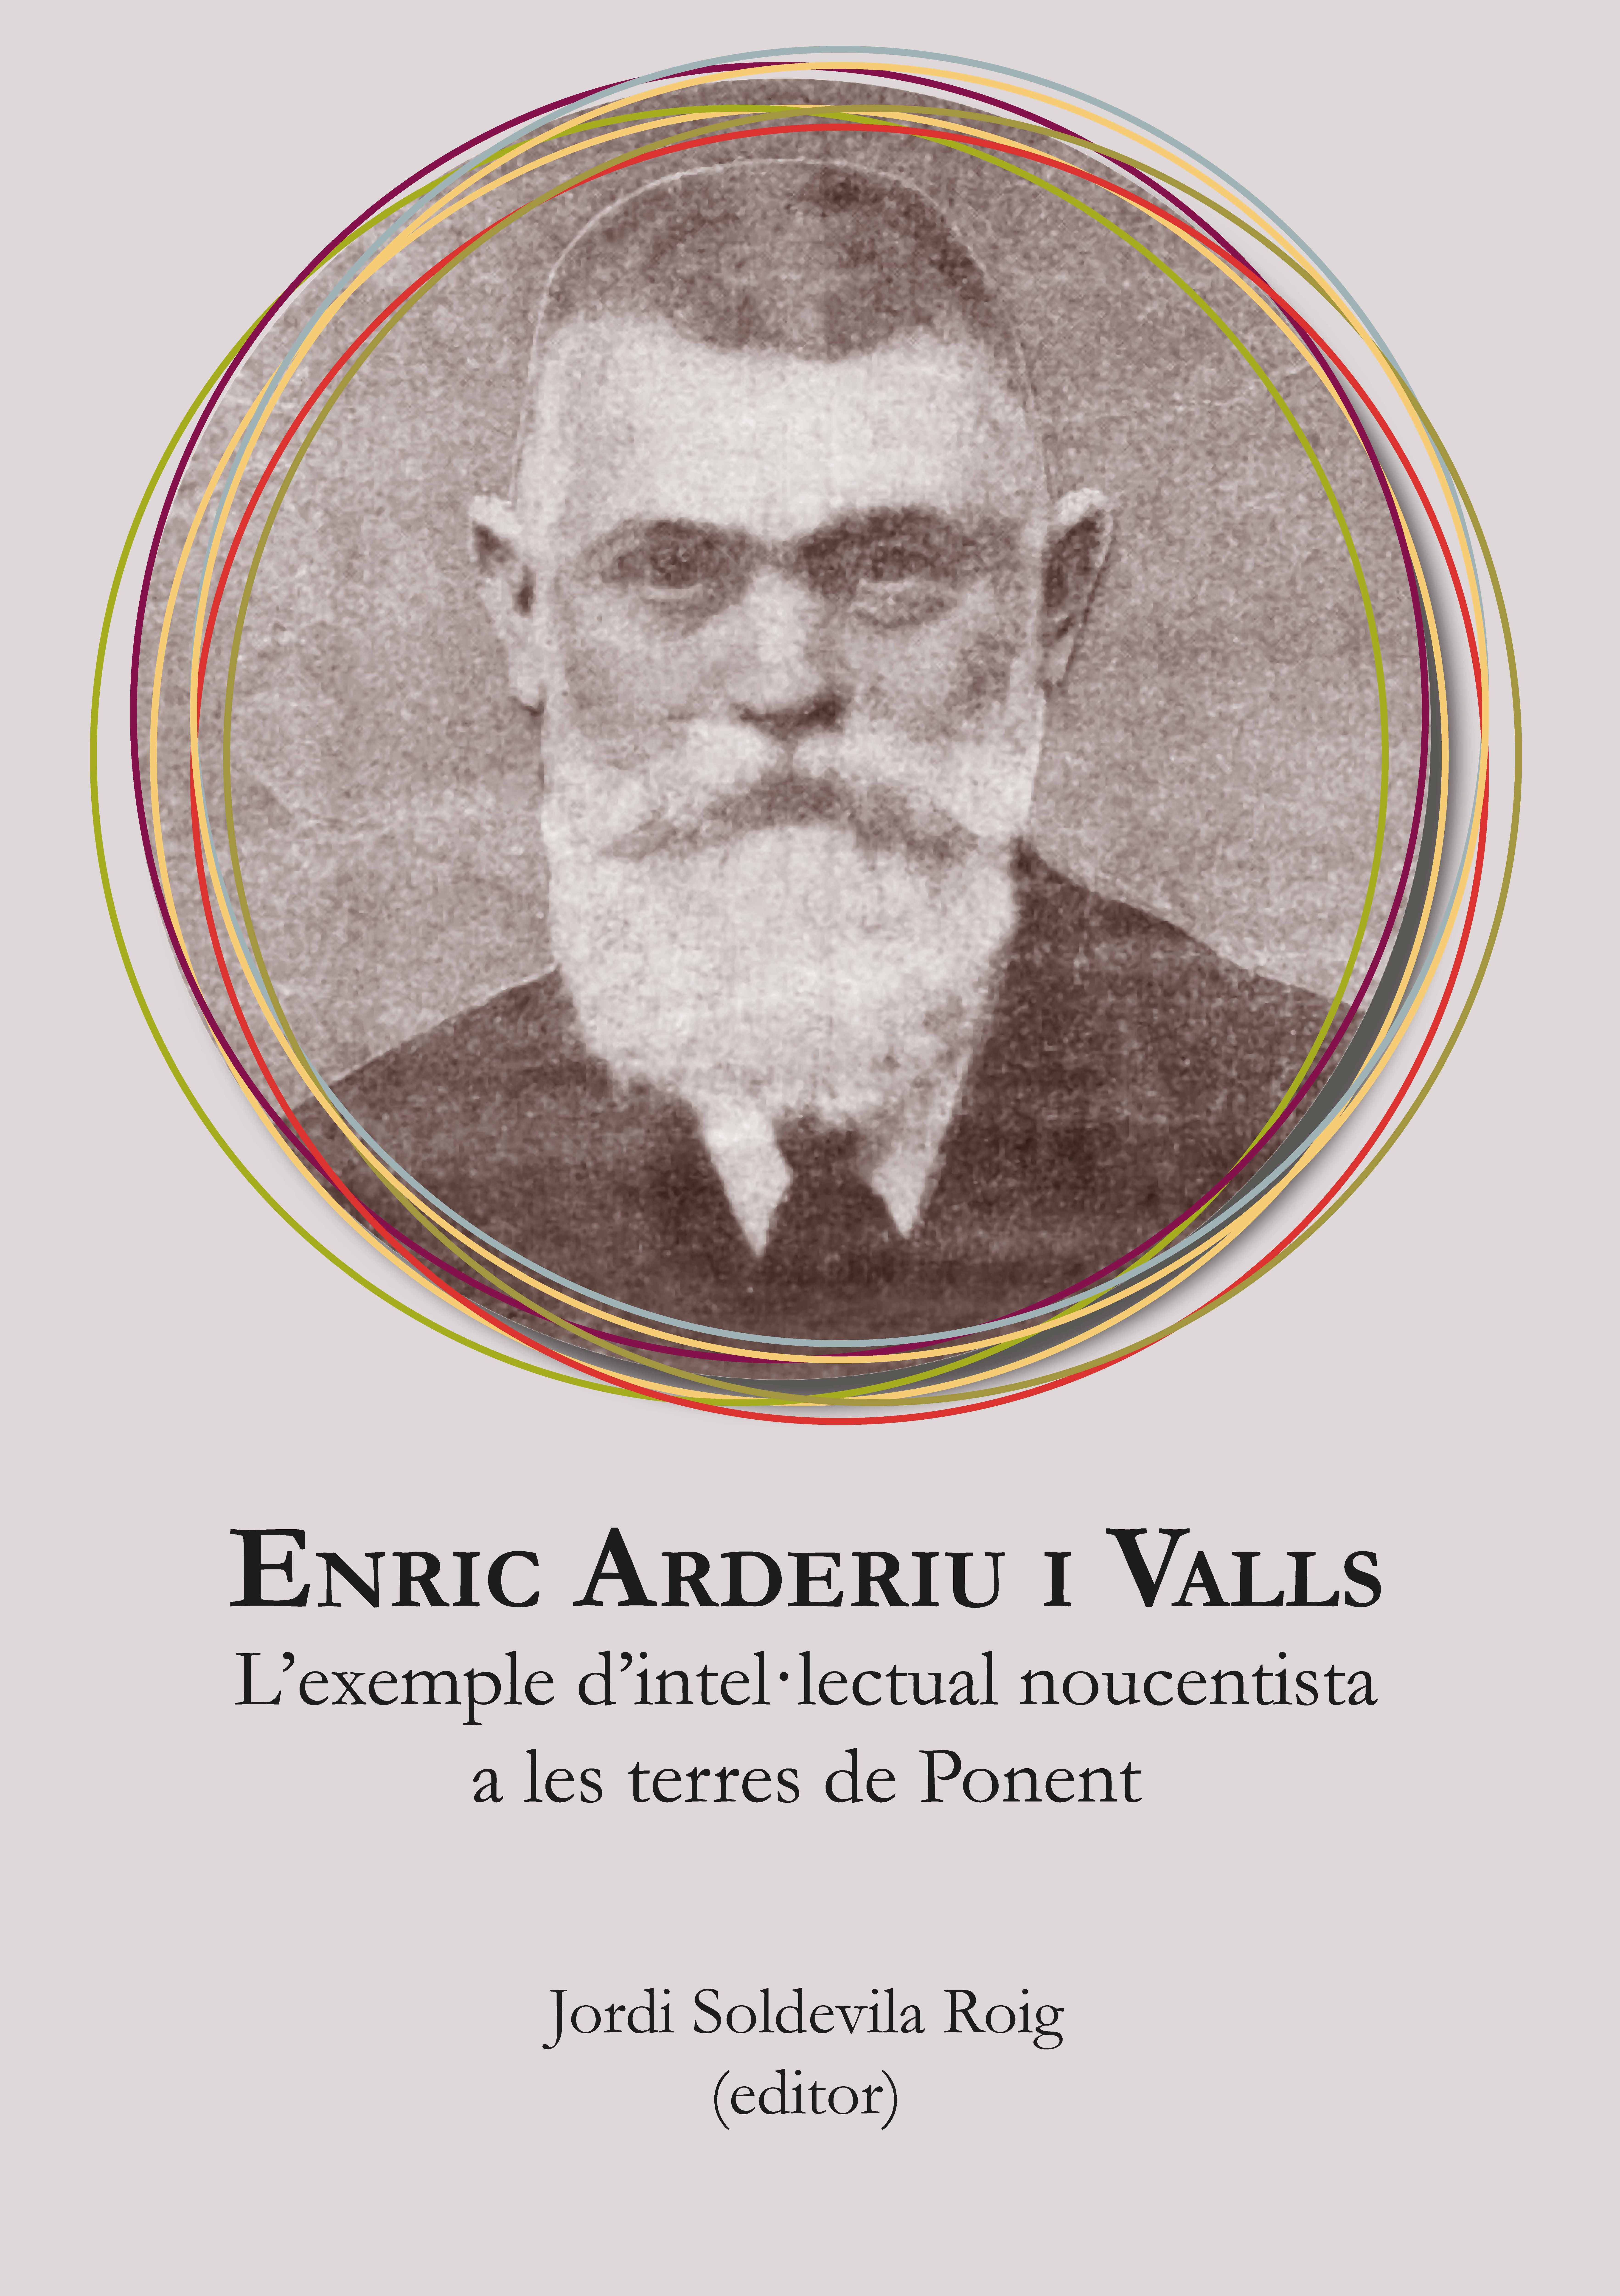 Enric Arderiu i Valls